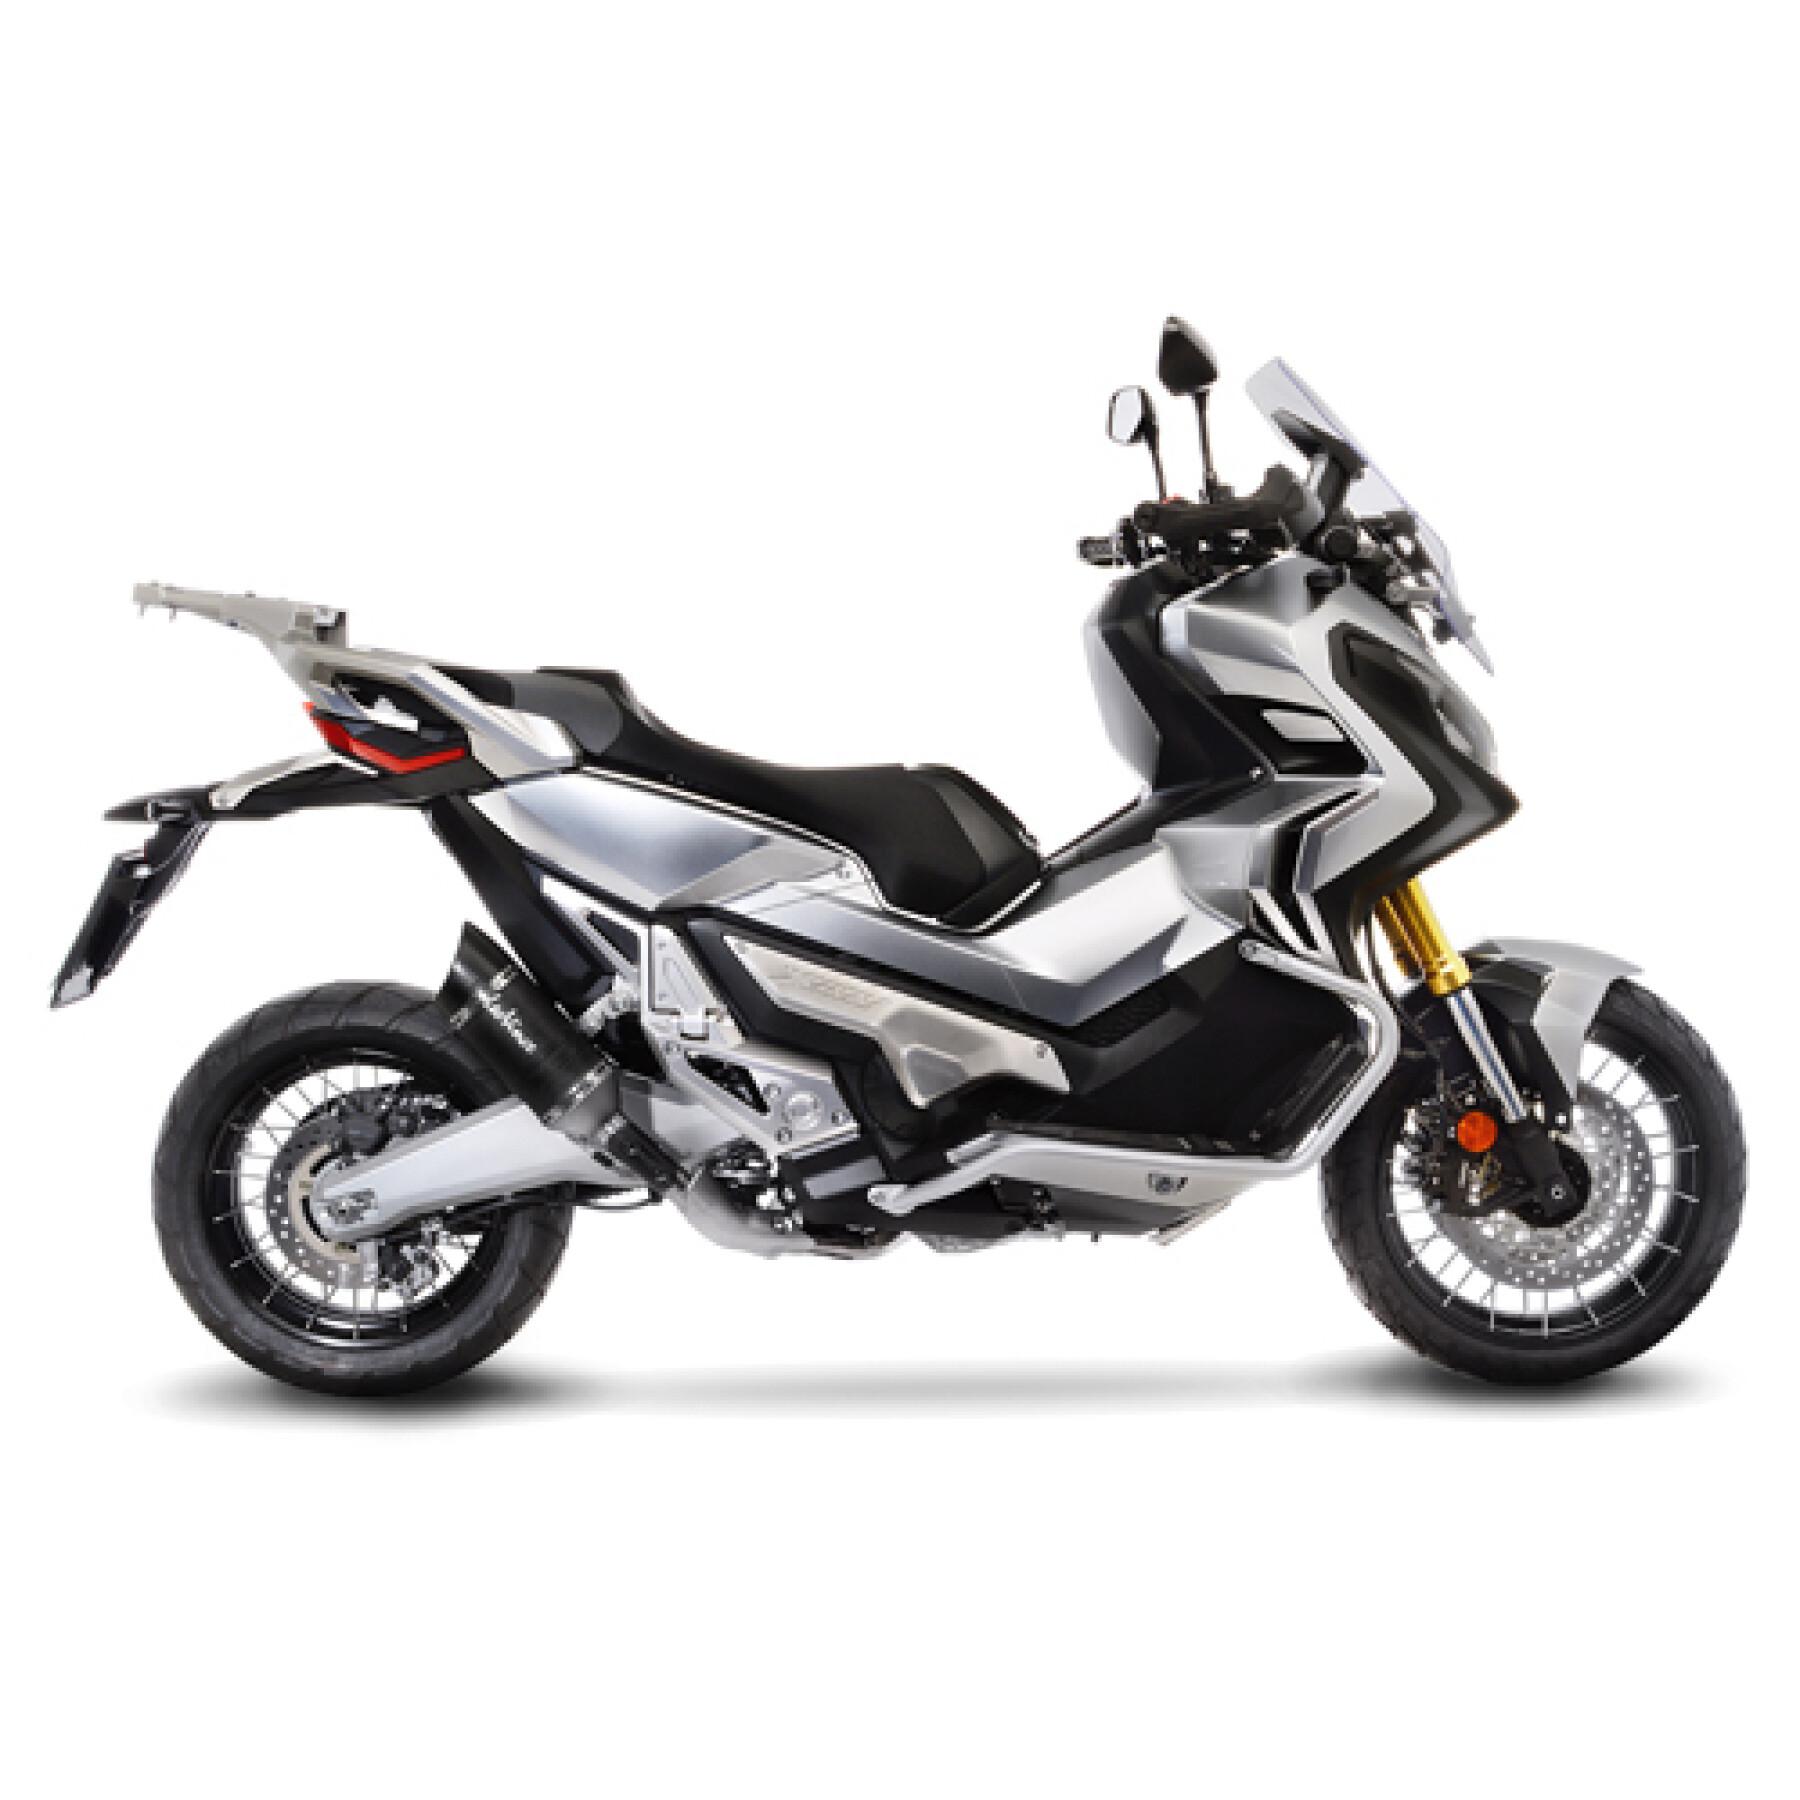 Échappement moto Leovince Lv Pro Carbone Honda X-Adv 2017-2021